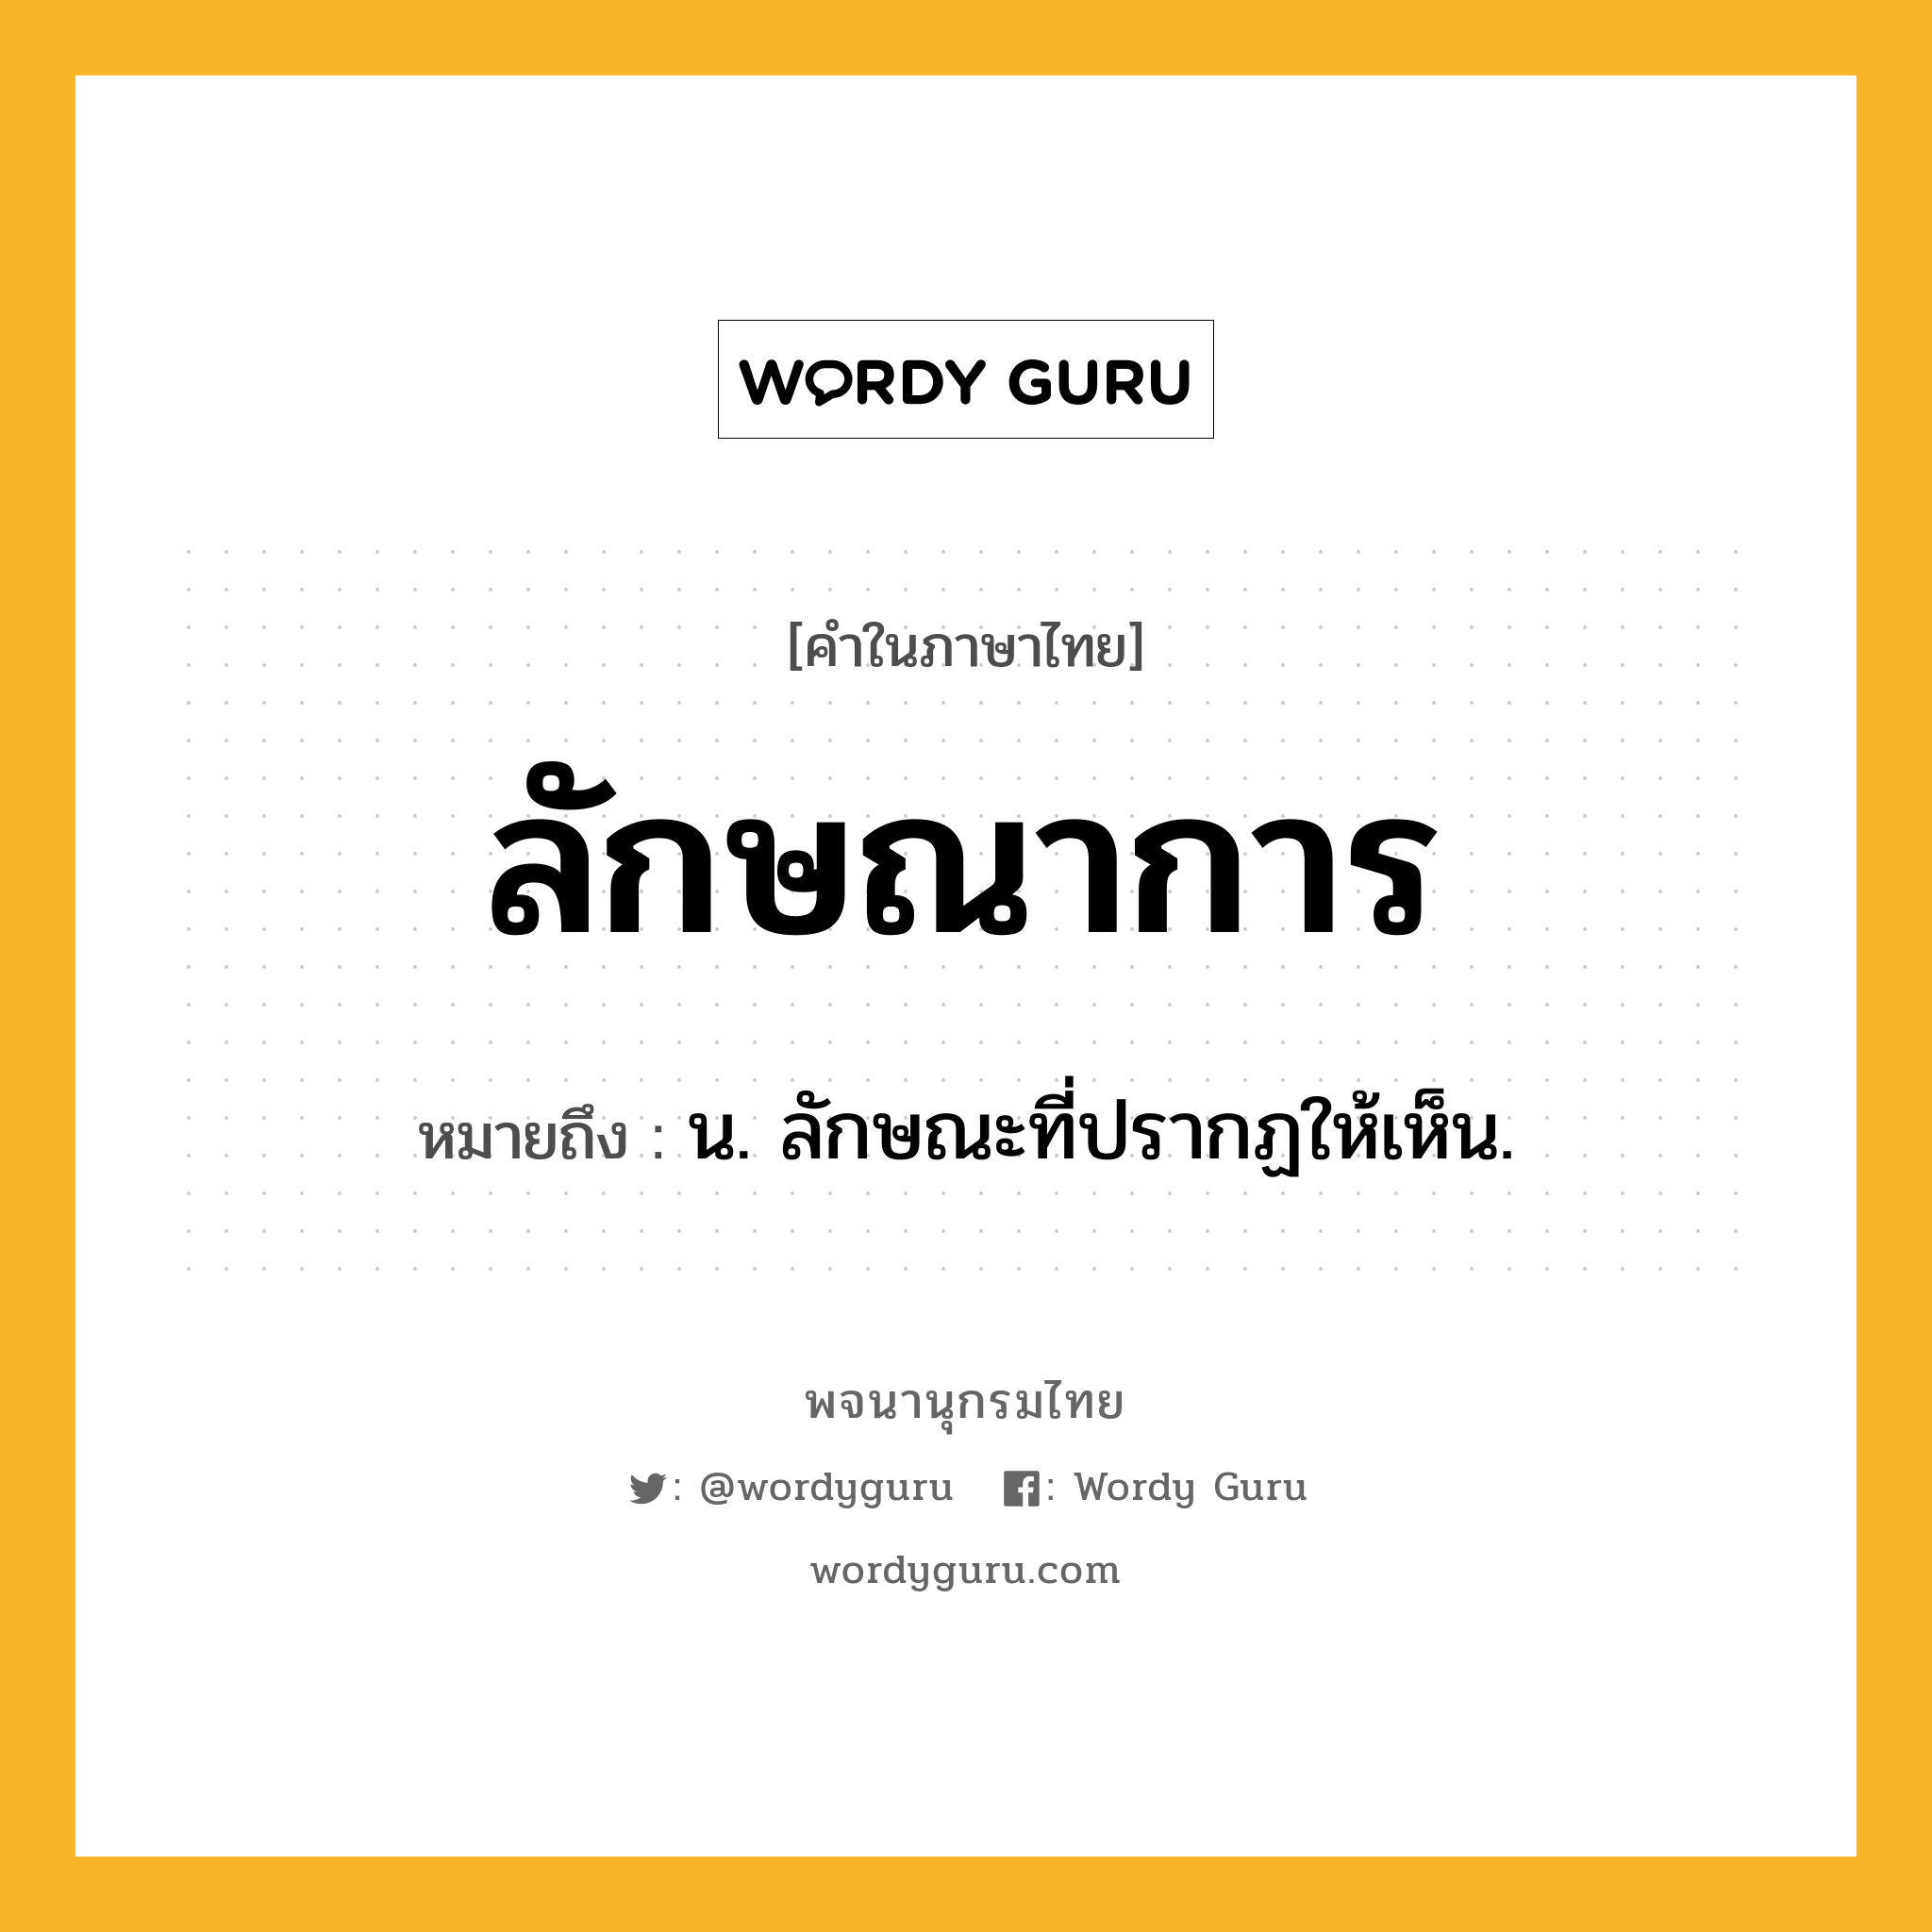 ลักษณาการ ความหมาย หมายถึงอะไร?, คำในภาษาไทย ลักษณาการ หมายถึง น. ลักษณะที่ปรากฏให้เห็น.